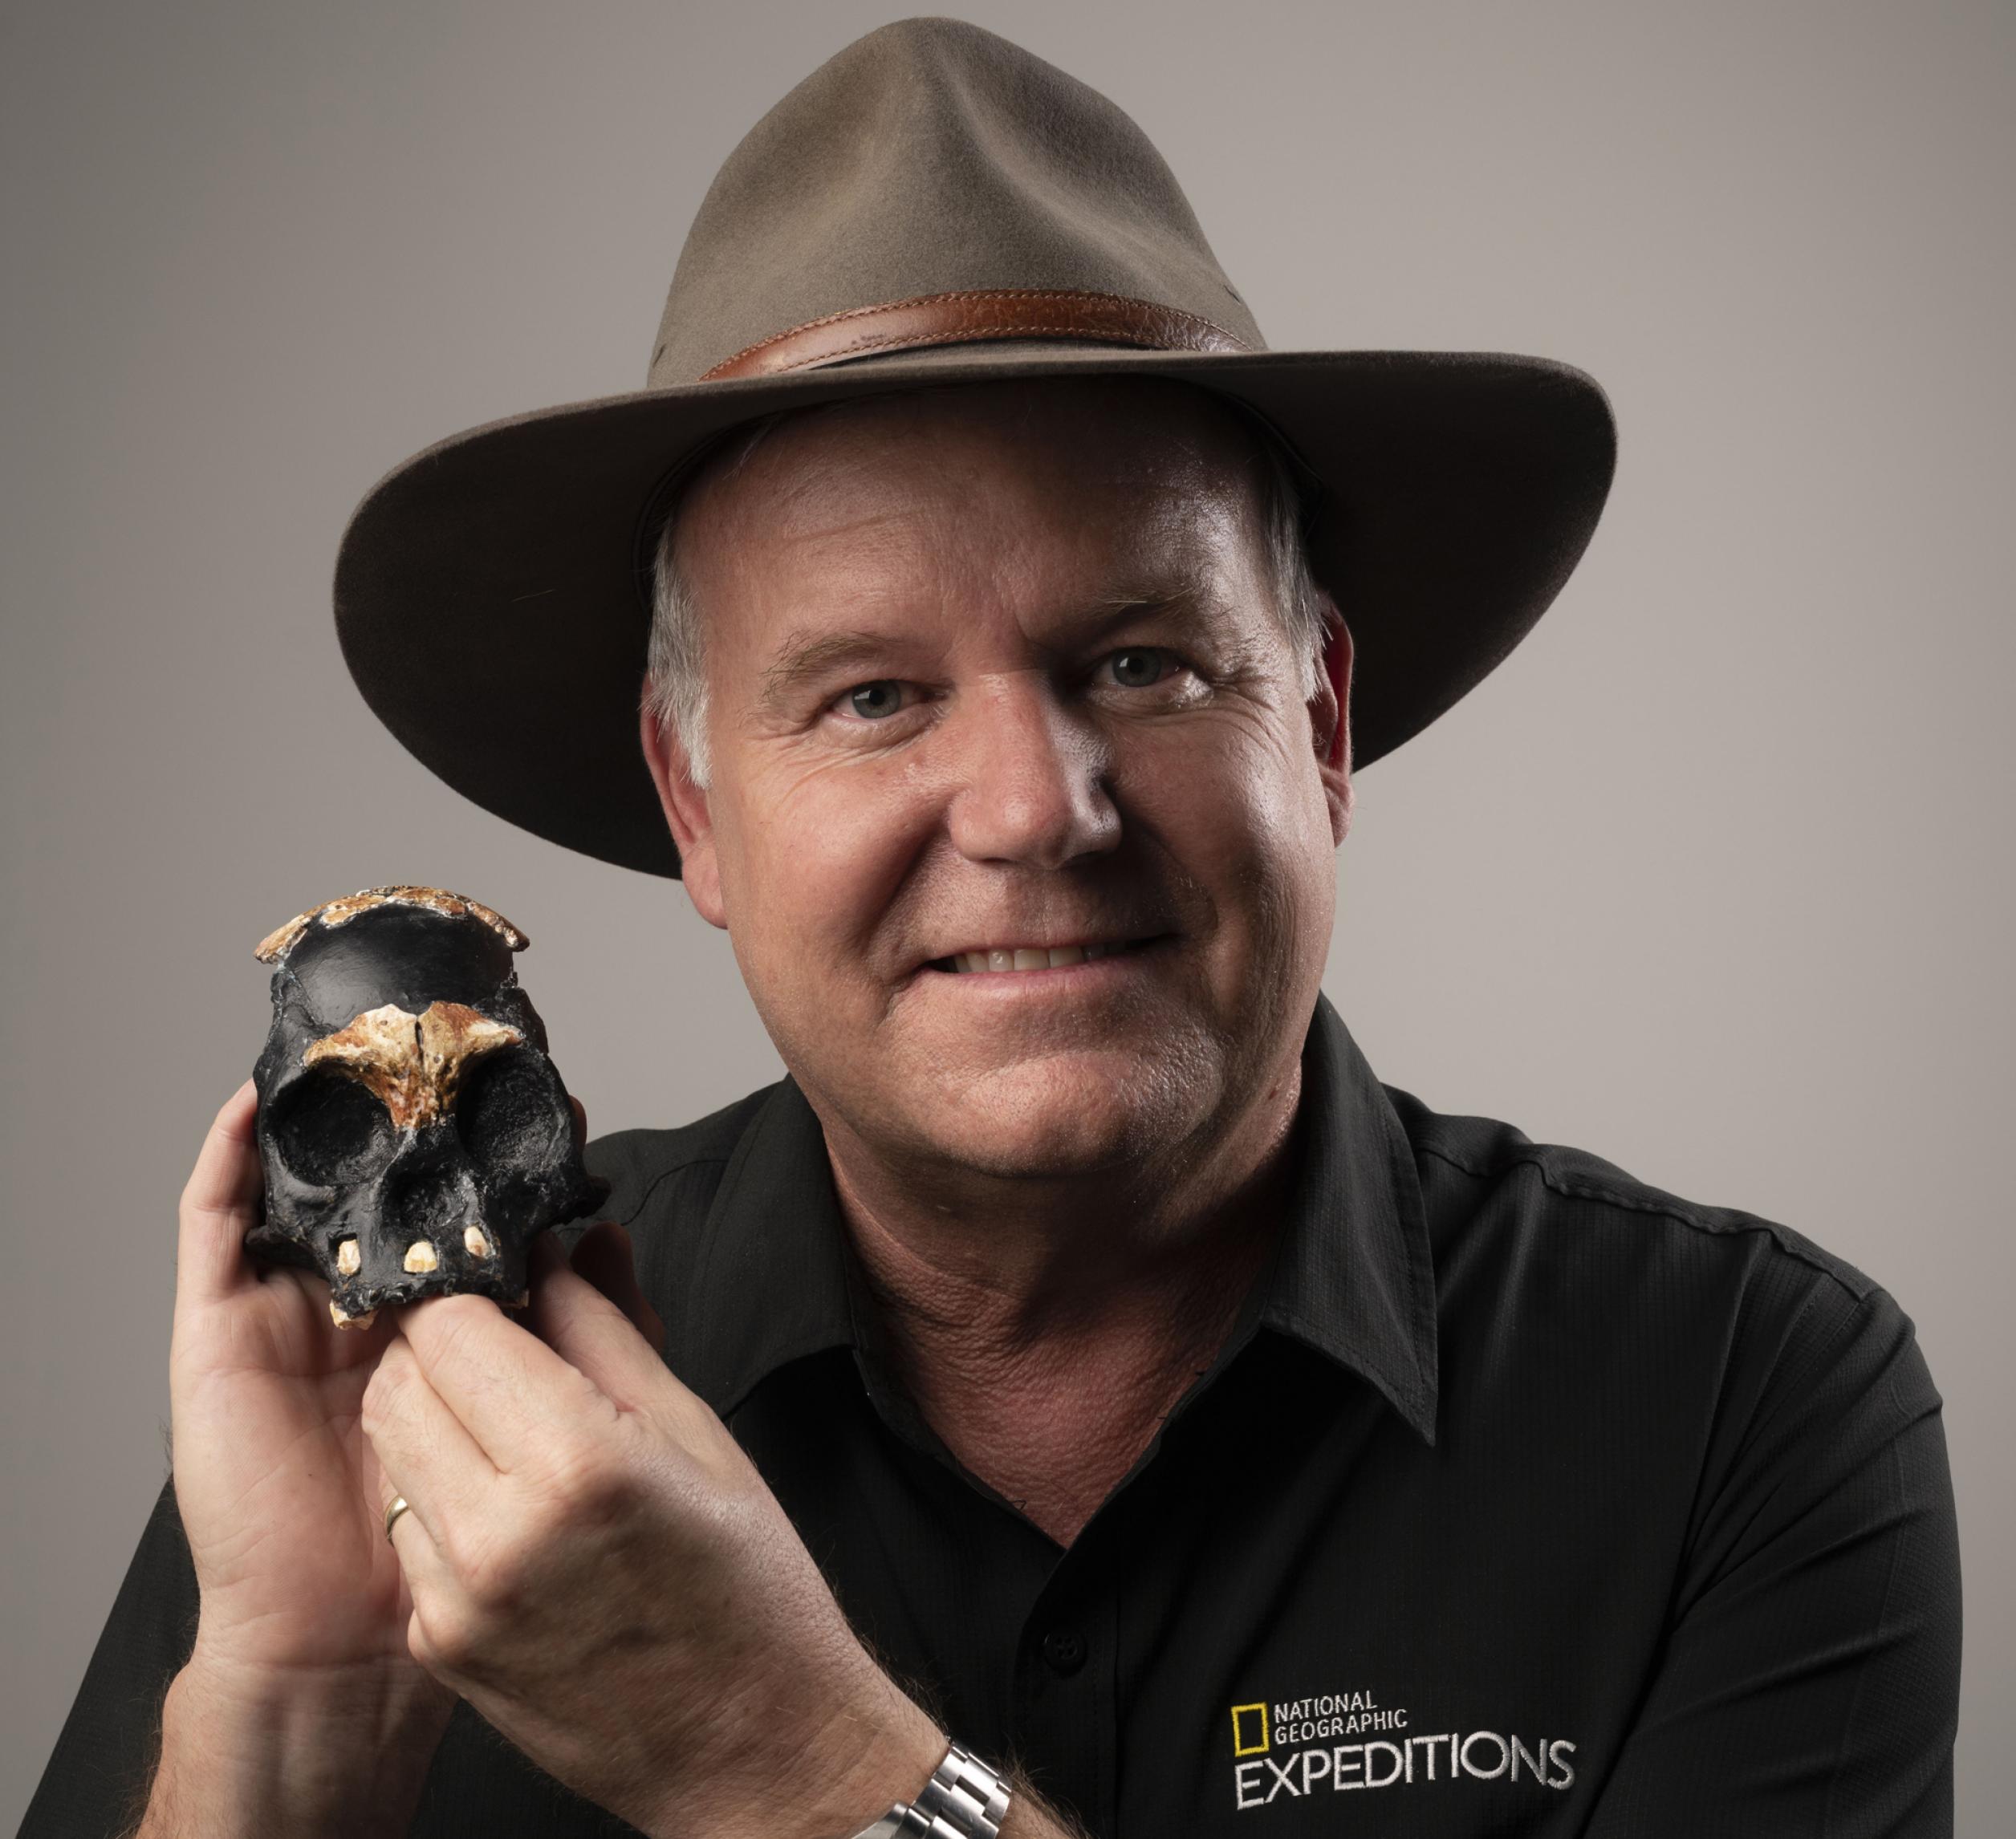 Das Foto zeigt einen Mann, Mitte fünfzig, mit braunem Filzhut und schwarzem Hemd, der in seiner rechten Hand einen etwa faustgroßen Schädel, zusammengesetzt aus hellbraunen fossilen Knochen und schwarzem Material, trägt.